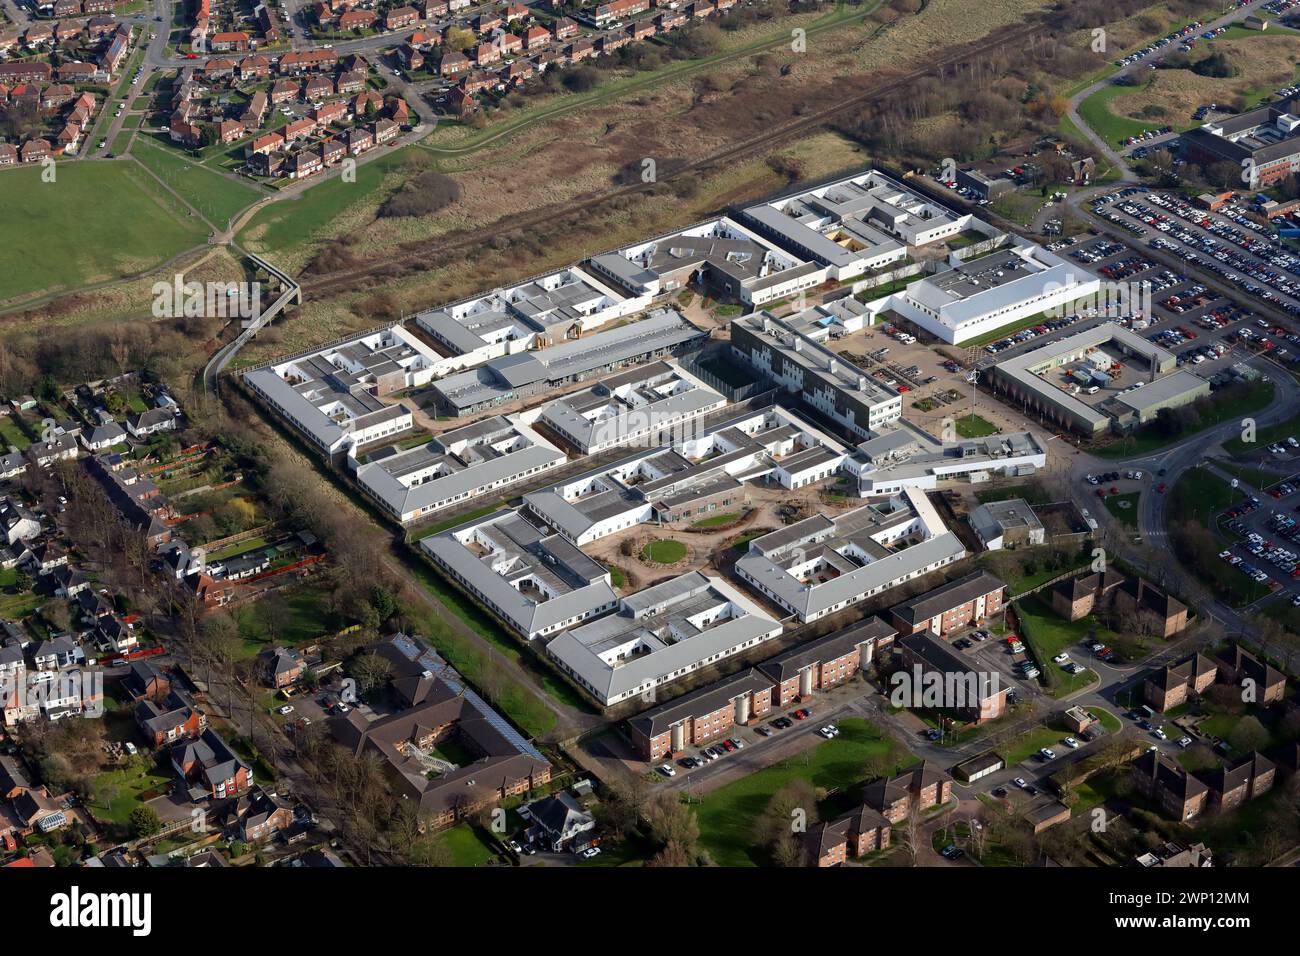 Vue aérienne de l'hôpital Roseberry Park, hôpital de santé mentale à Middlesbrough (près de l'hôpital James Cook) Banque D'Images